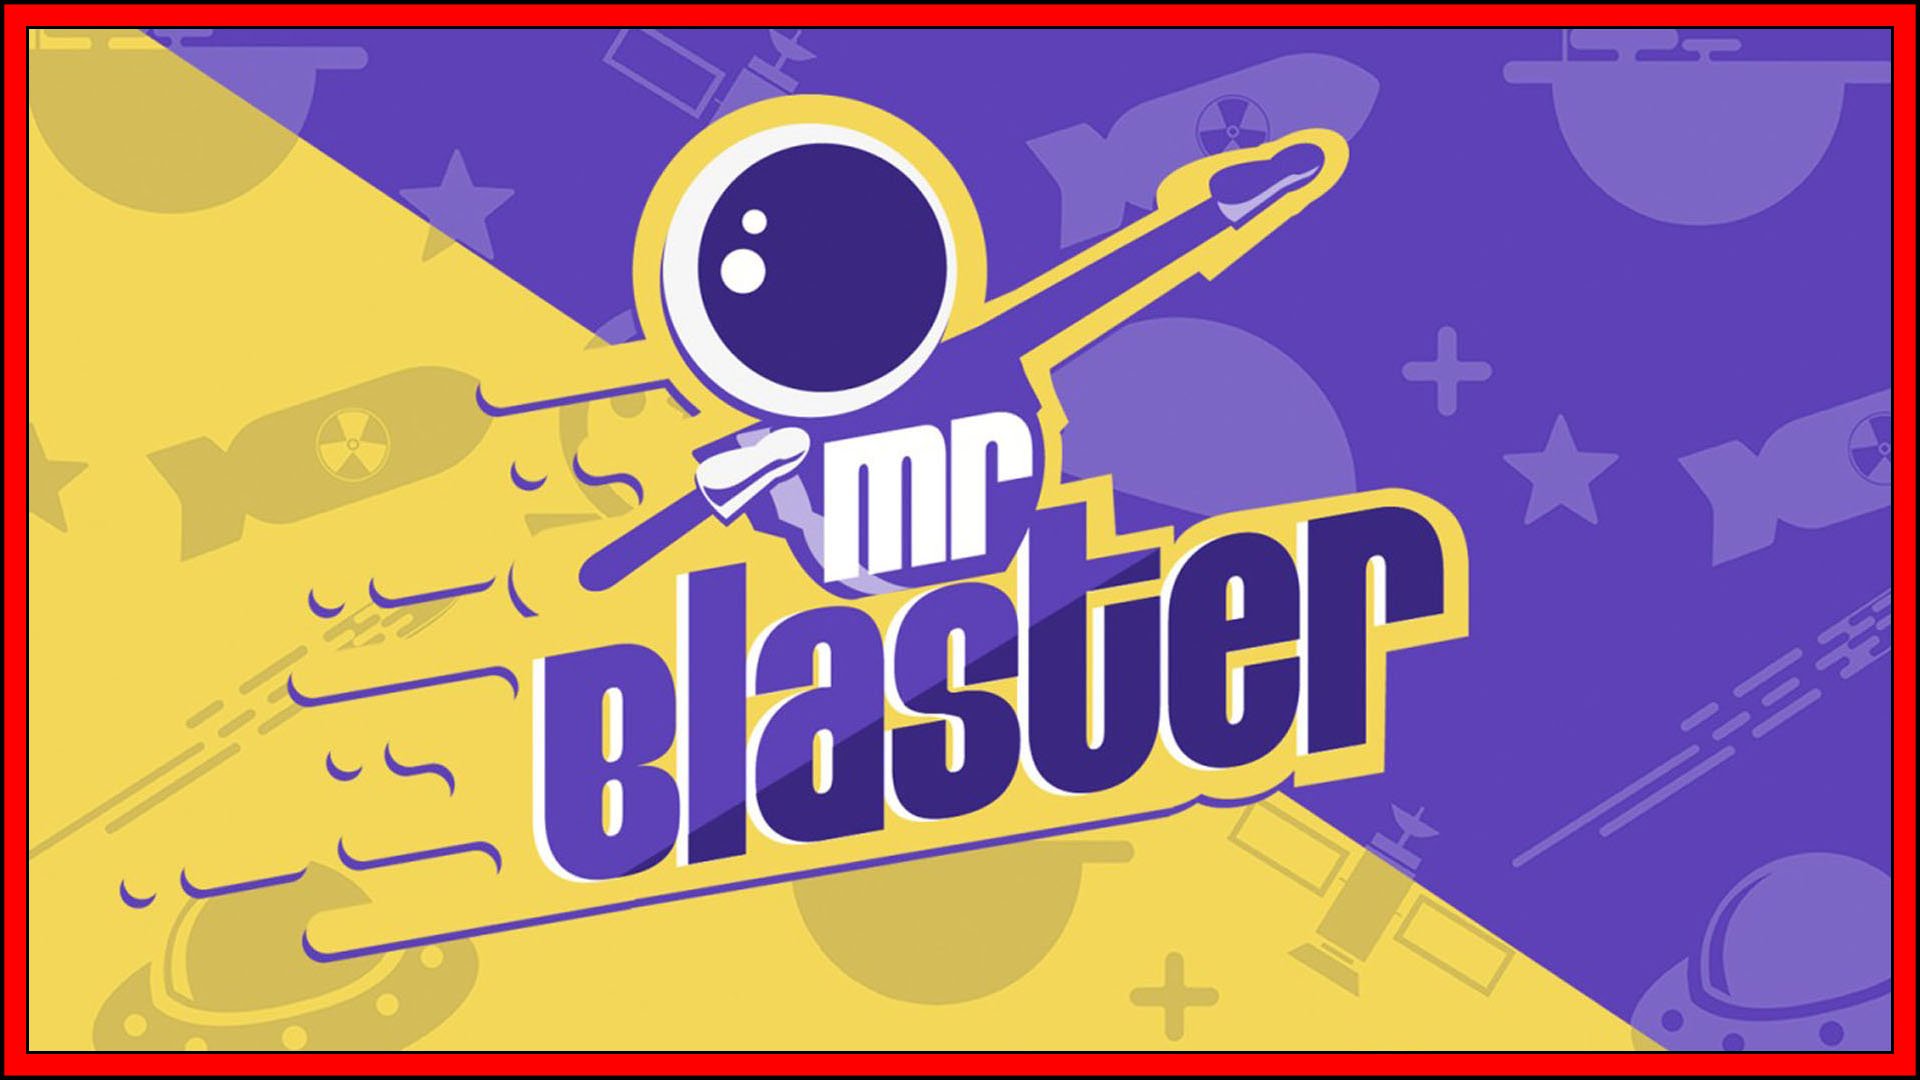 Mr Blaster Fi3